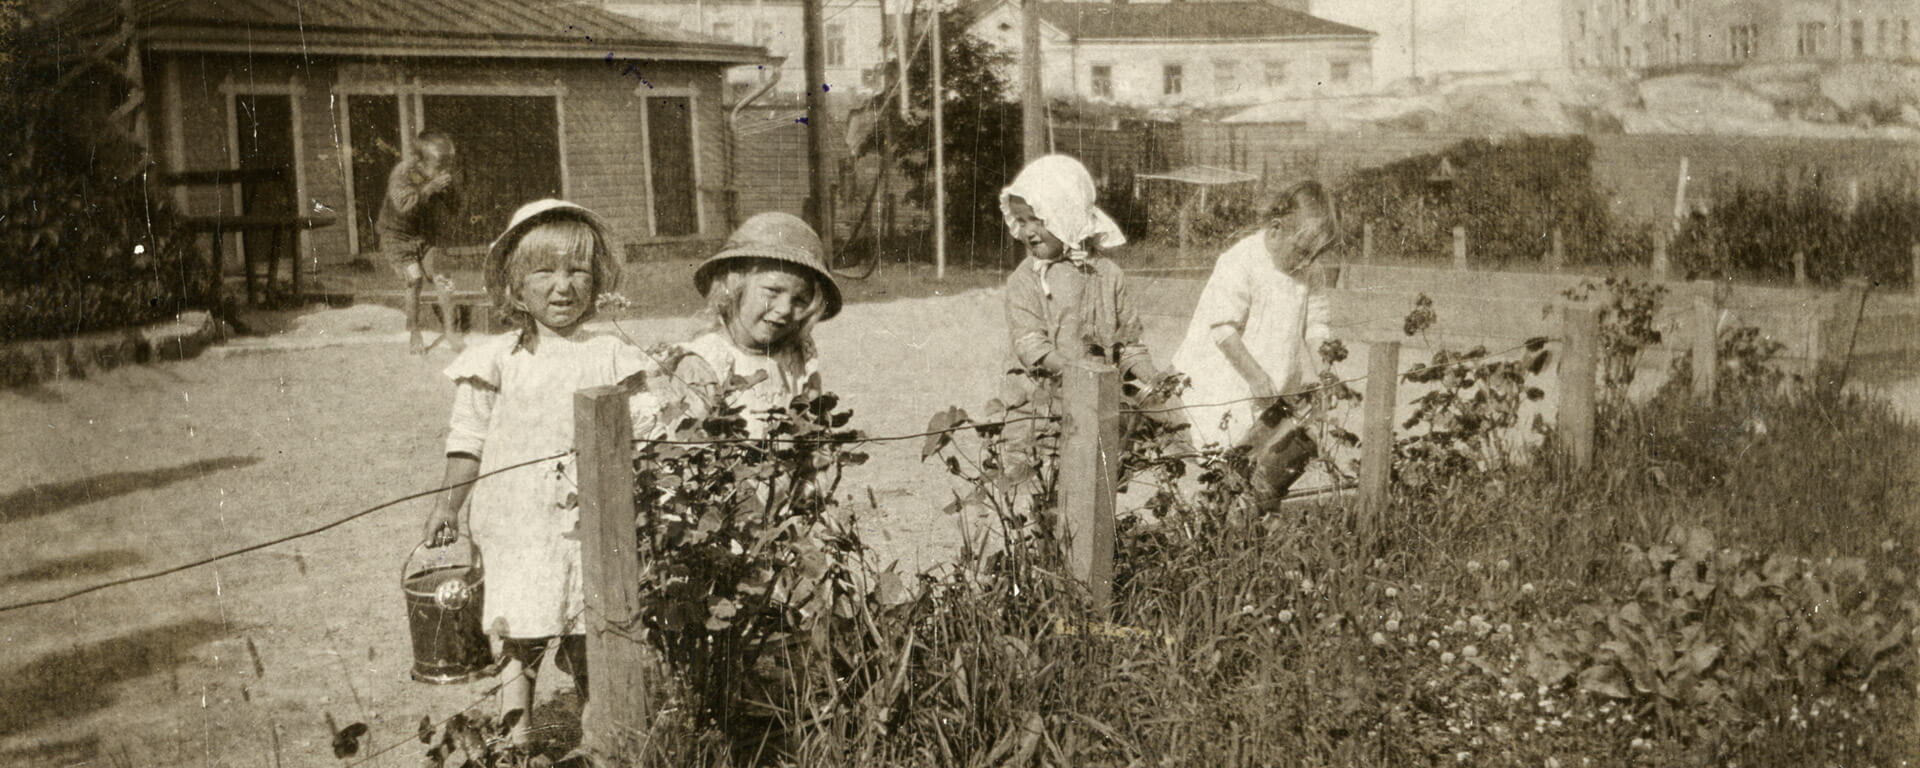 Kuvassa neljä lasta kastelemassa kukkia Ebeneserin pihalla. Taustalla on yksi lapsi. Taustalla näkyy Ebeneserin pihalla oleva puinen vaja sekä Helsinginkatu 1 tontin kalliot. Lastentarhamuseon valokuvakokoelma.